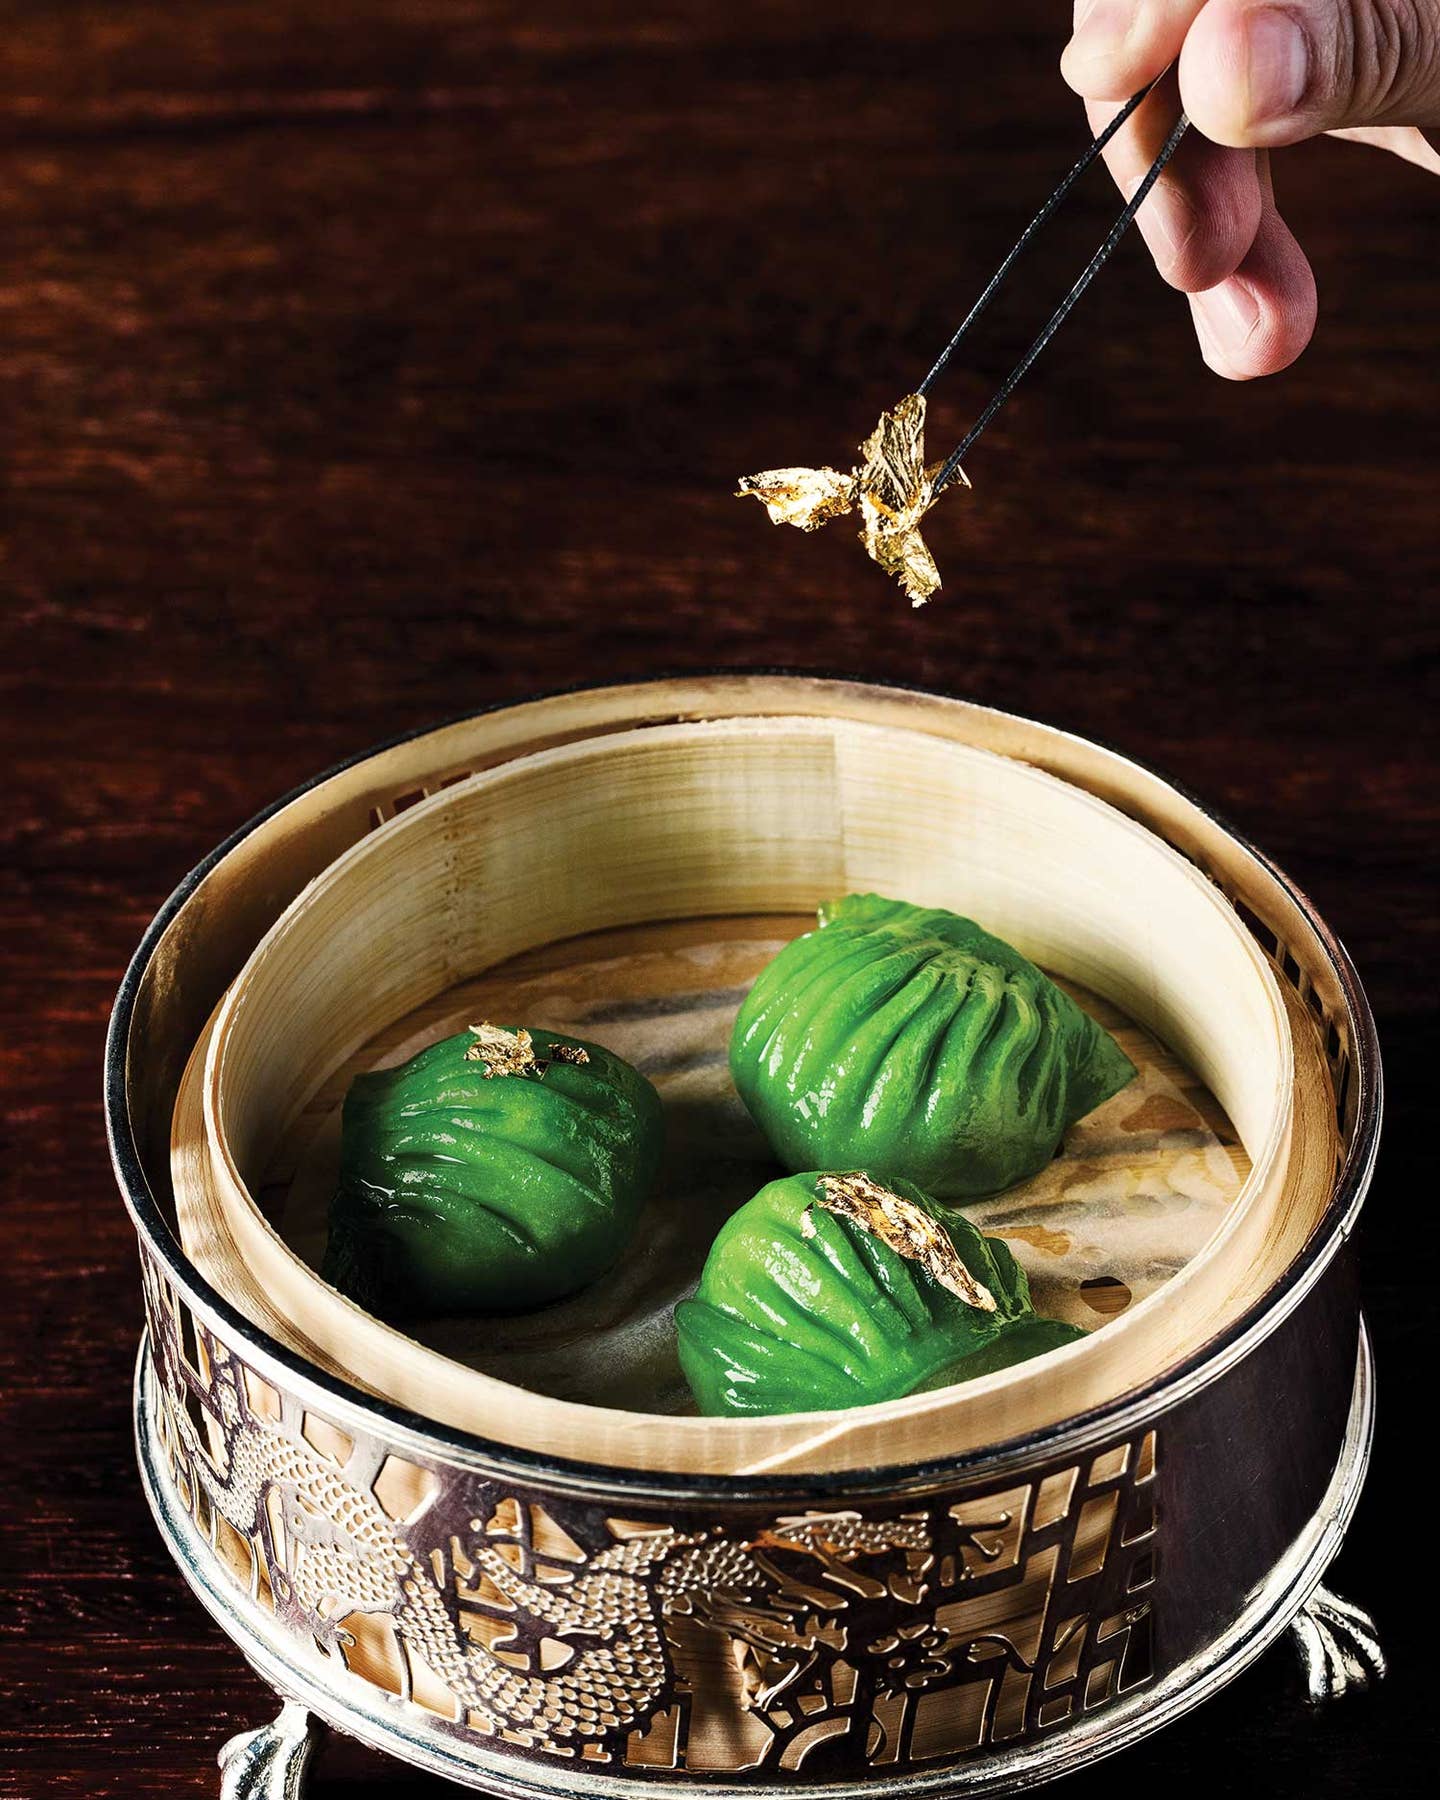 Dumplings from Jade Dragon.